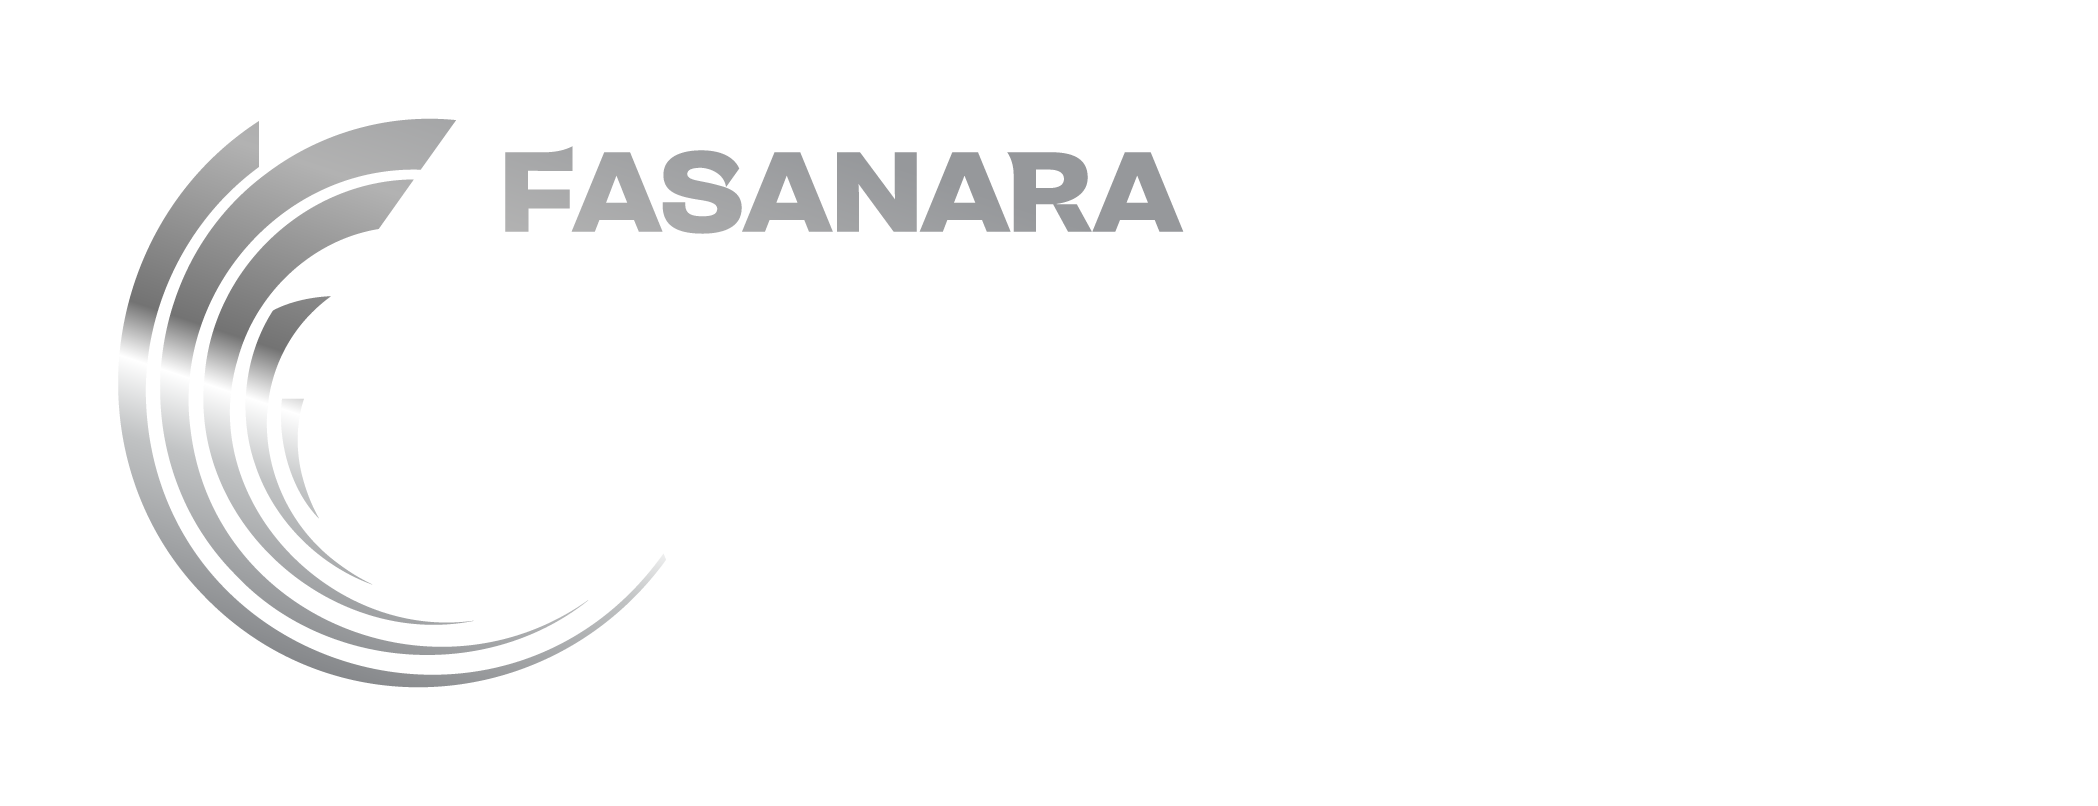 Fasanara Logo